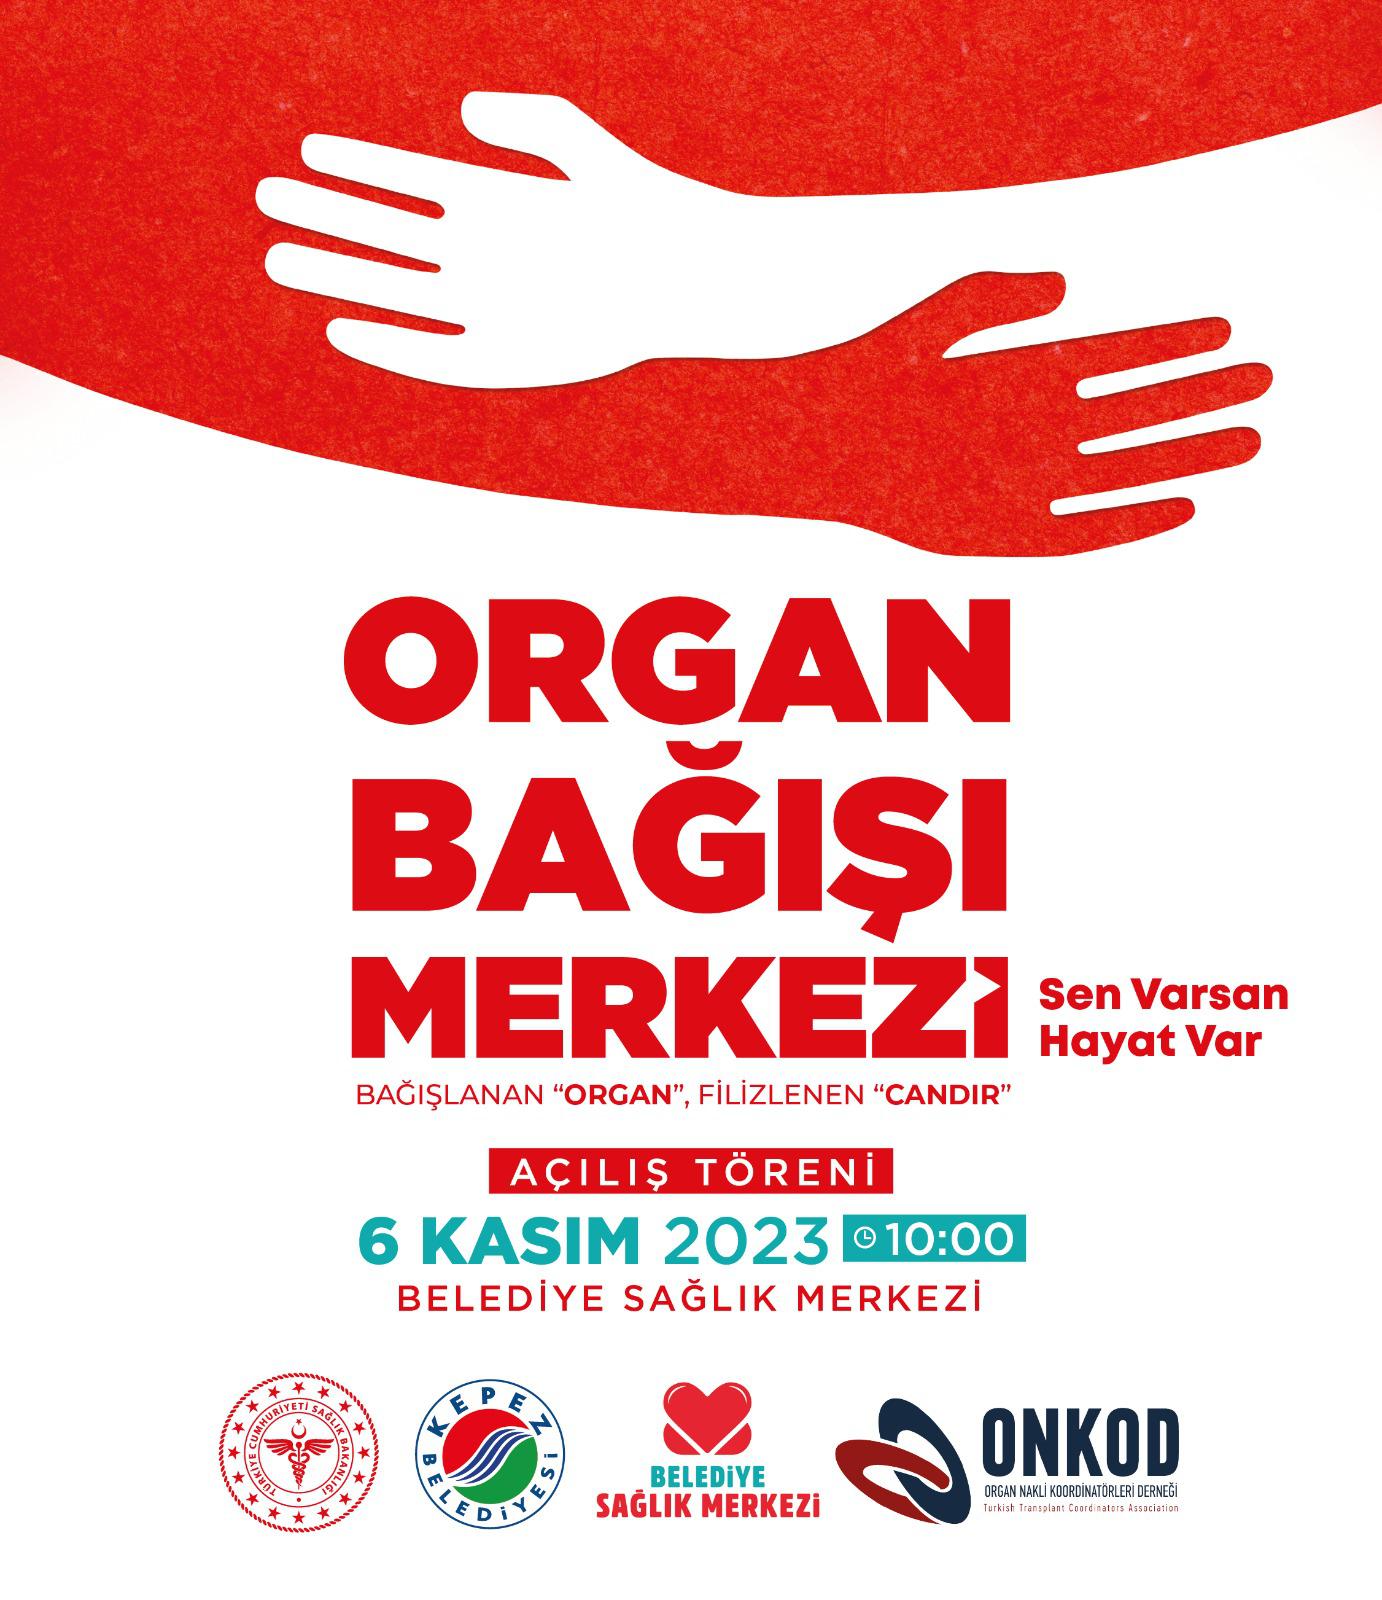 Kepez’den Organ Bağışı Haftası’nda ‘Organ Bağışı Merkezi’